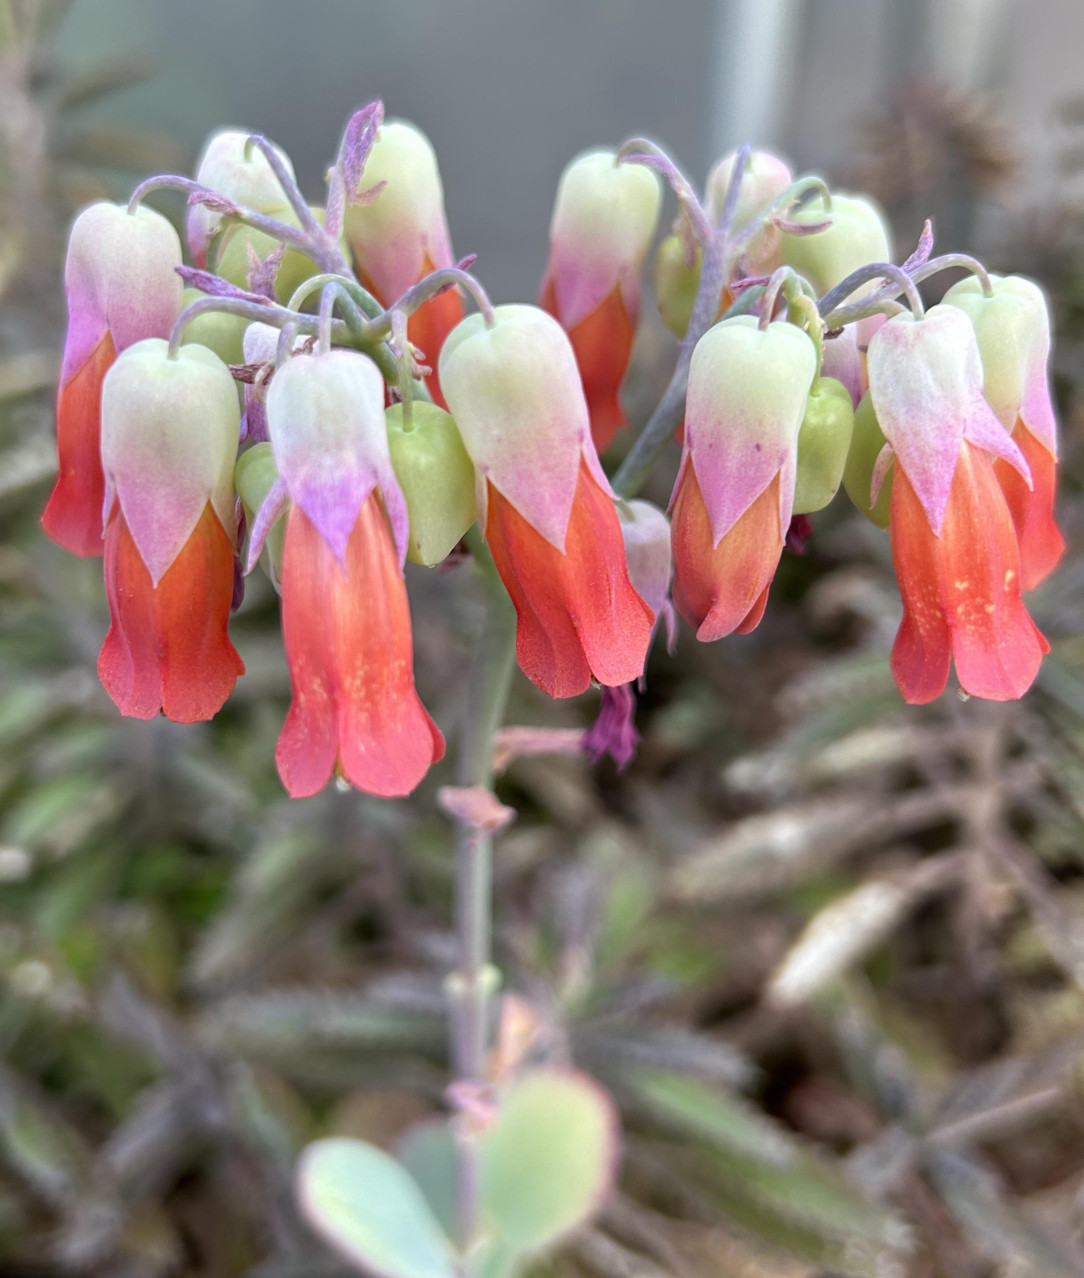 Kalanchoe marnieriana (Mariner’s kalanchoe) blooming